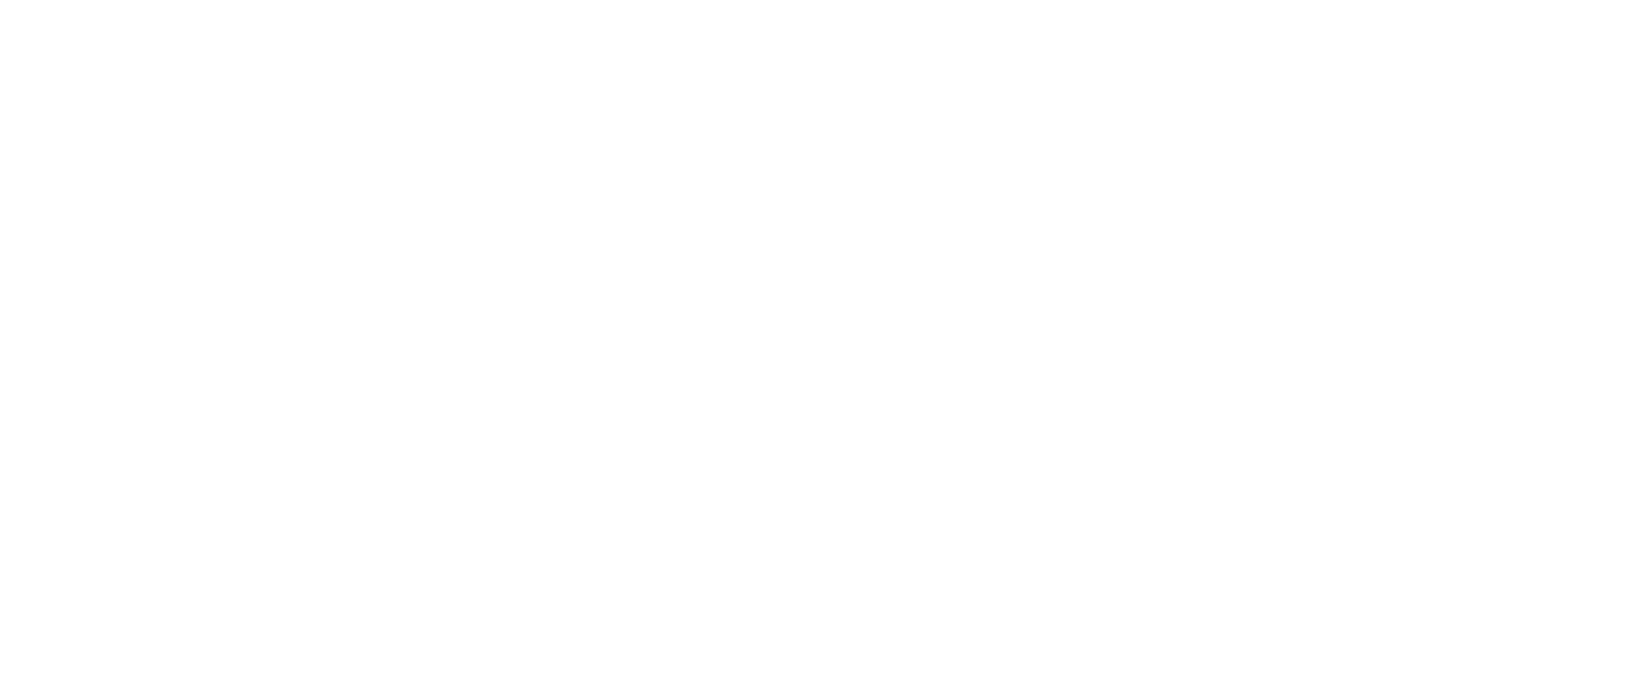 Korey Stringer Institute logo